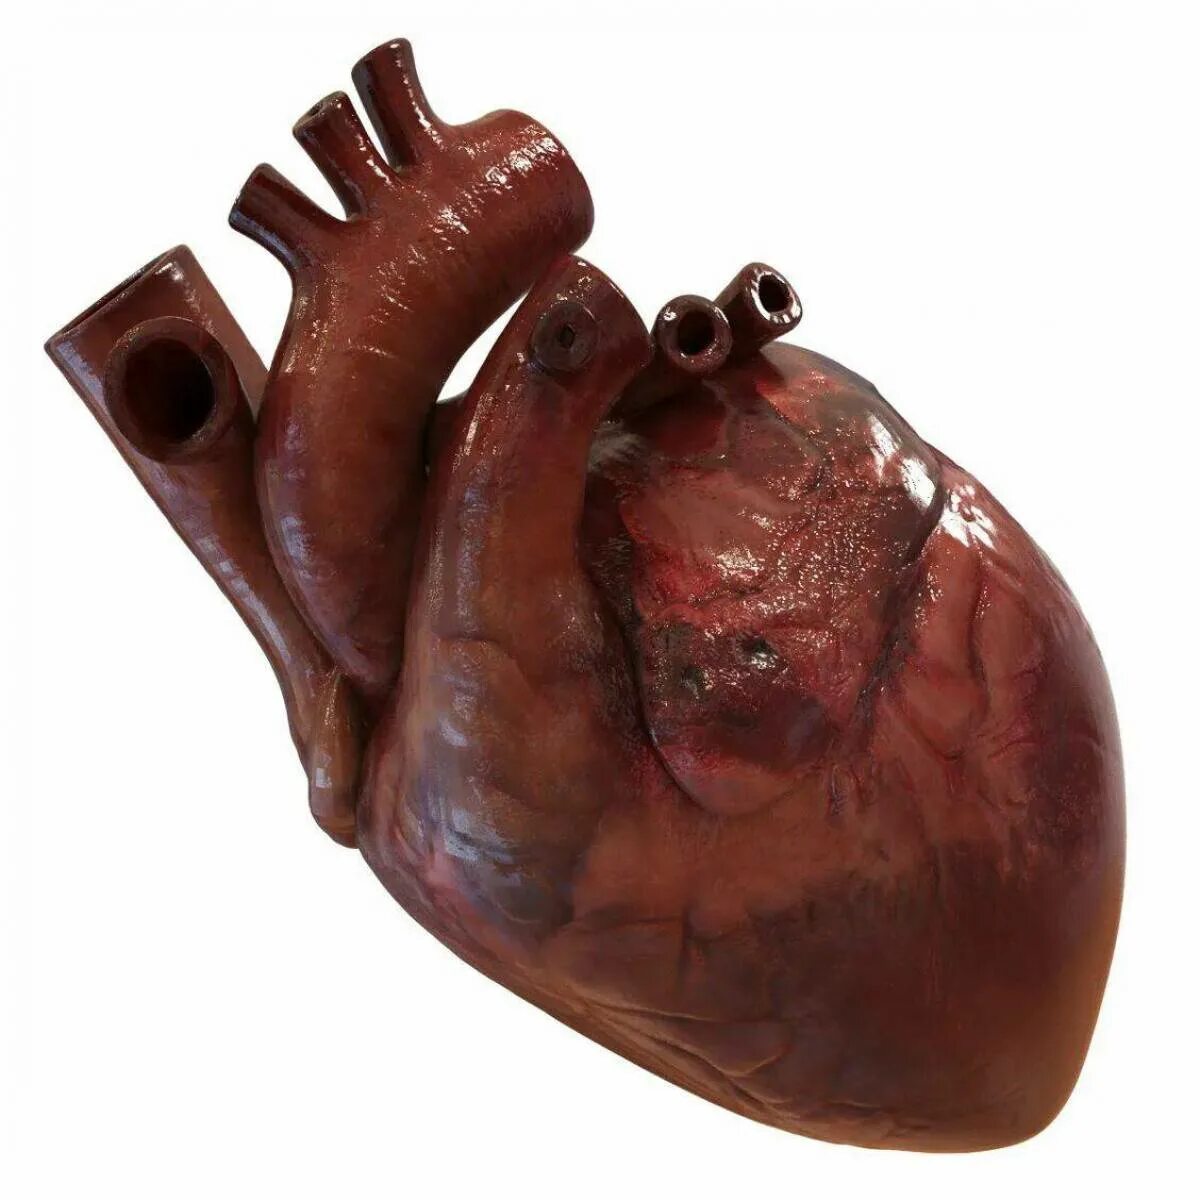 Муляж сердца человека. Макет сердца человека.